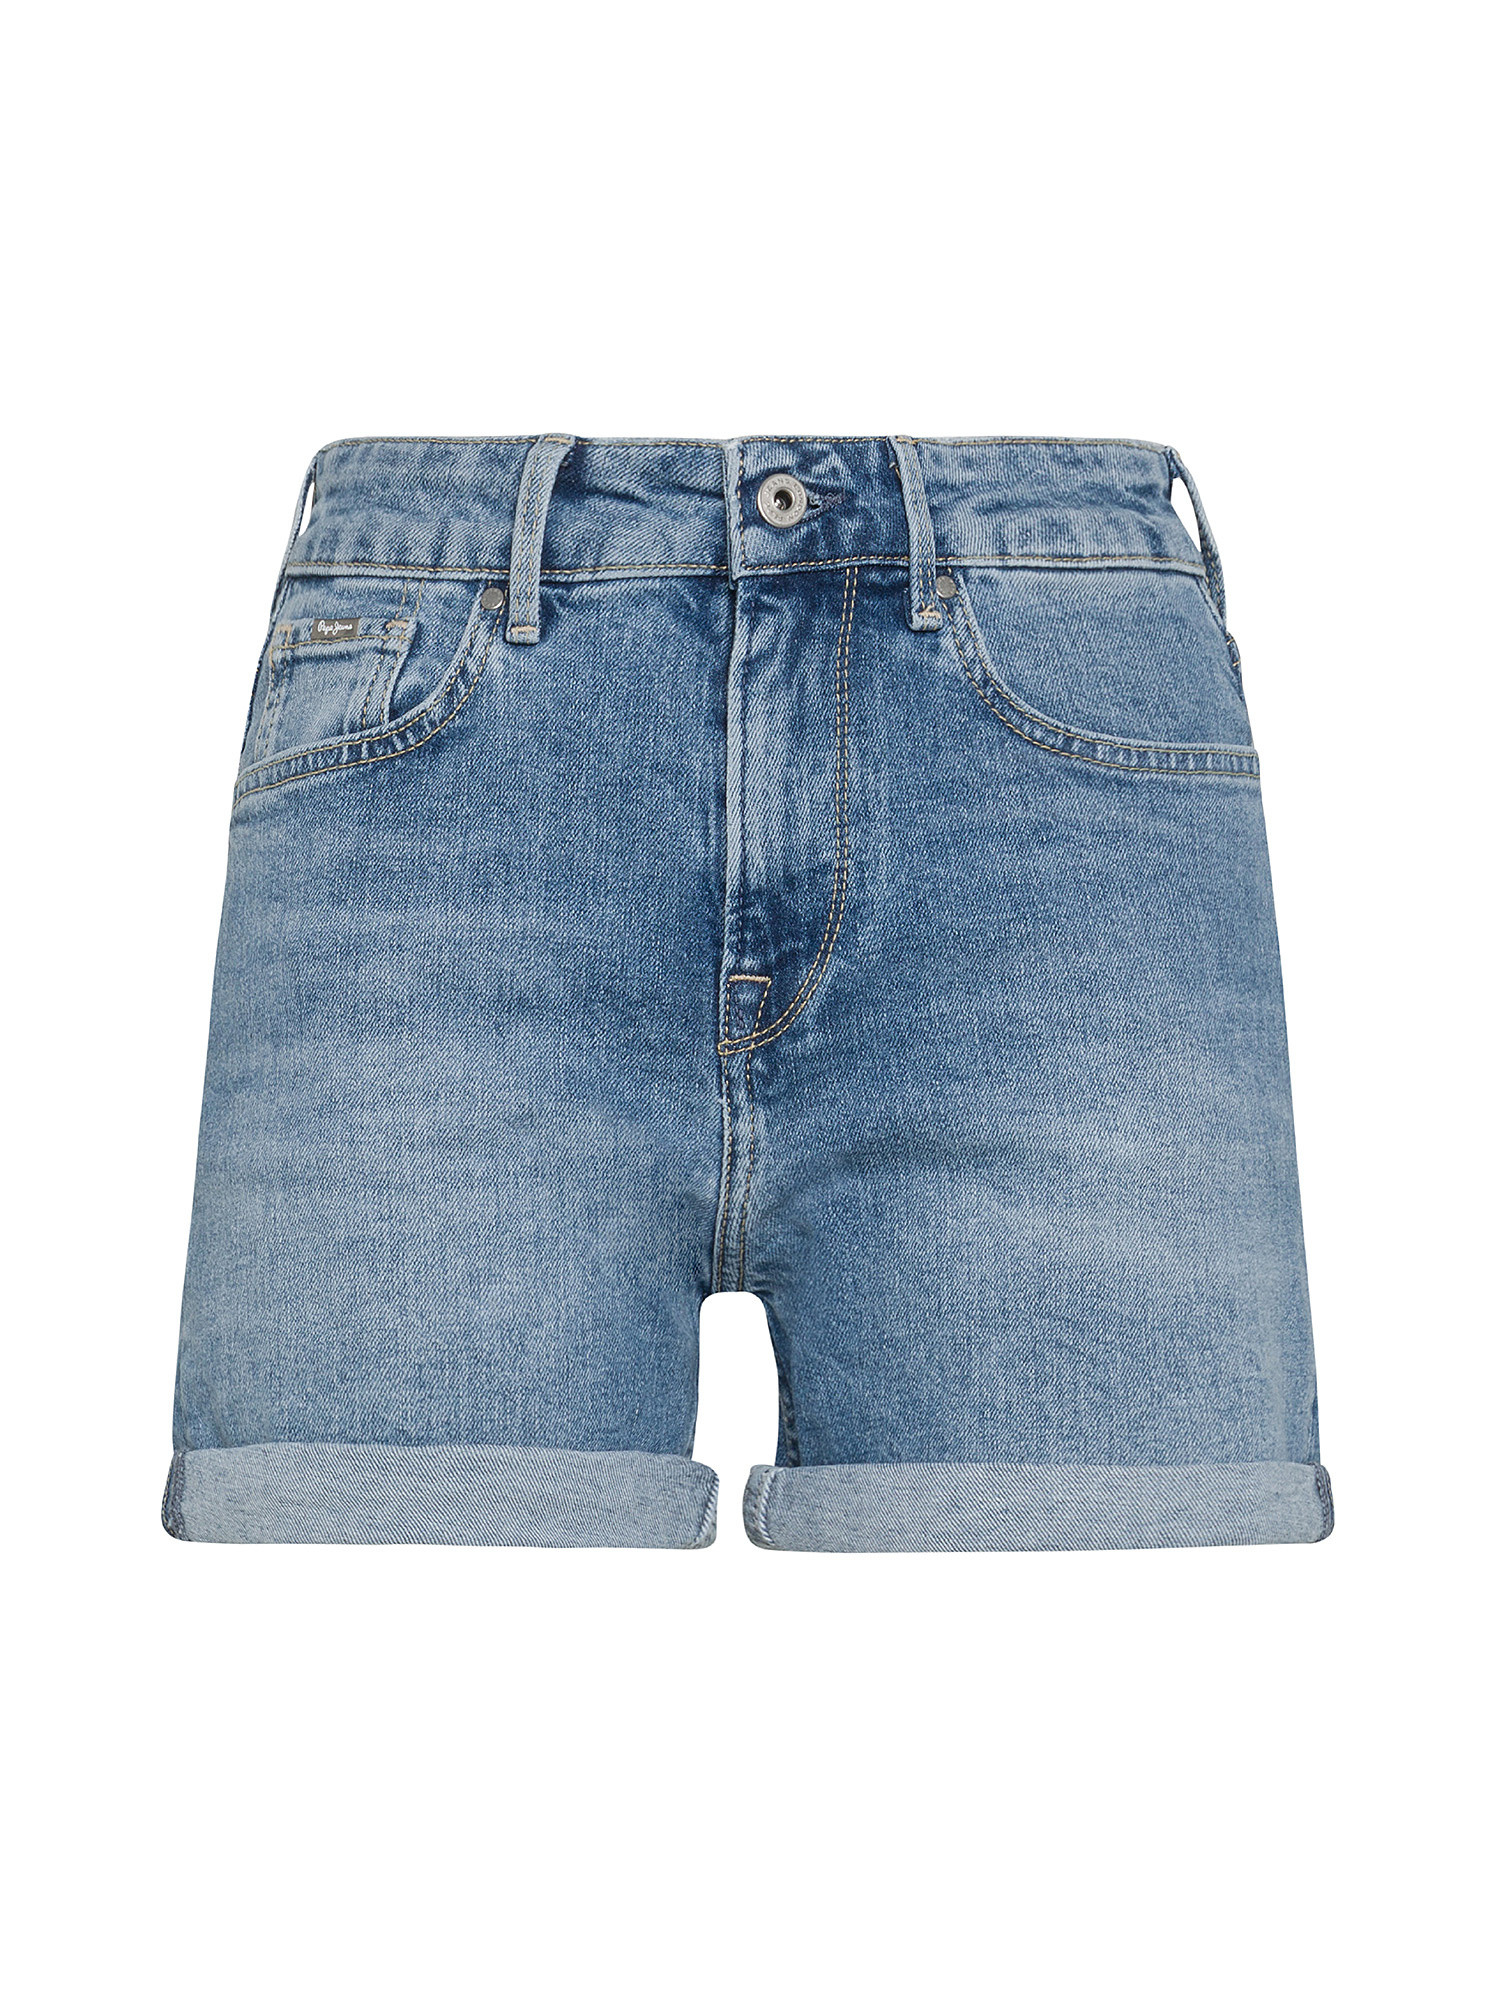 Pepe Jeans - Five-pocket denim shorts, Denim, large image number 0